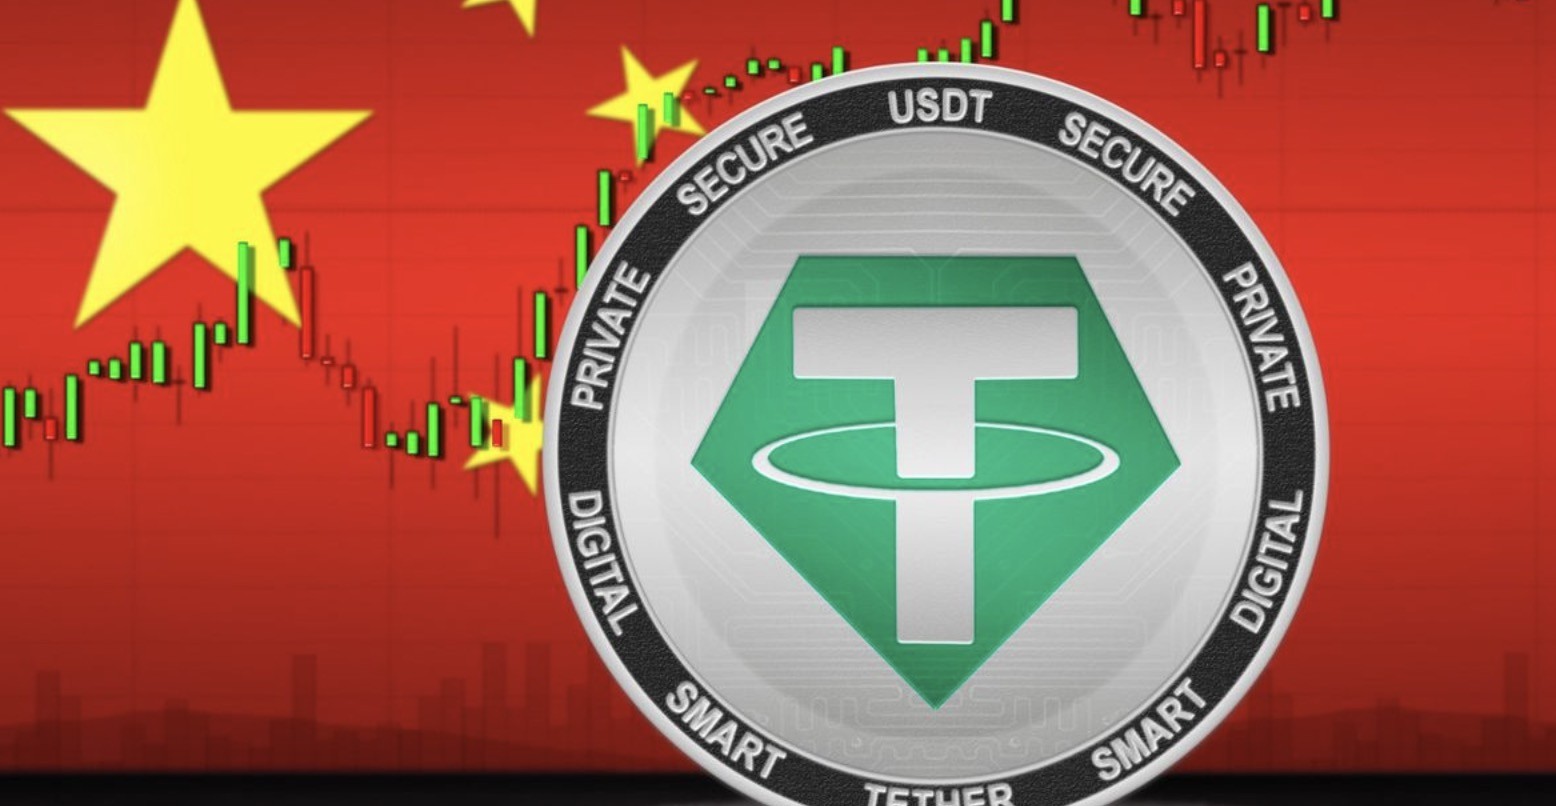 Trung Quốc cho biết sử dụng Tether để trao đổi tiền tệ là bất hợp pháp